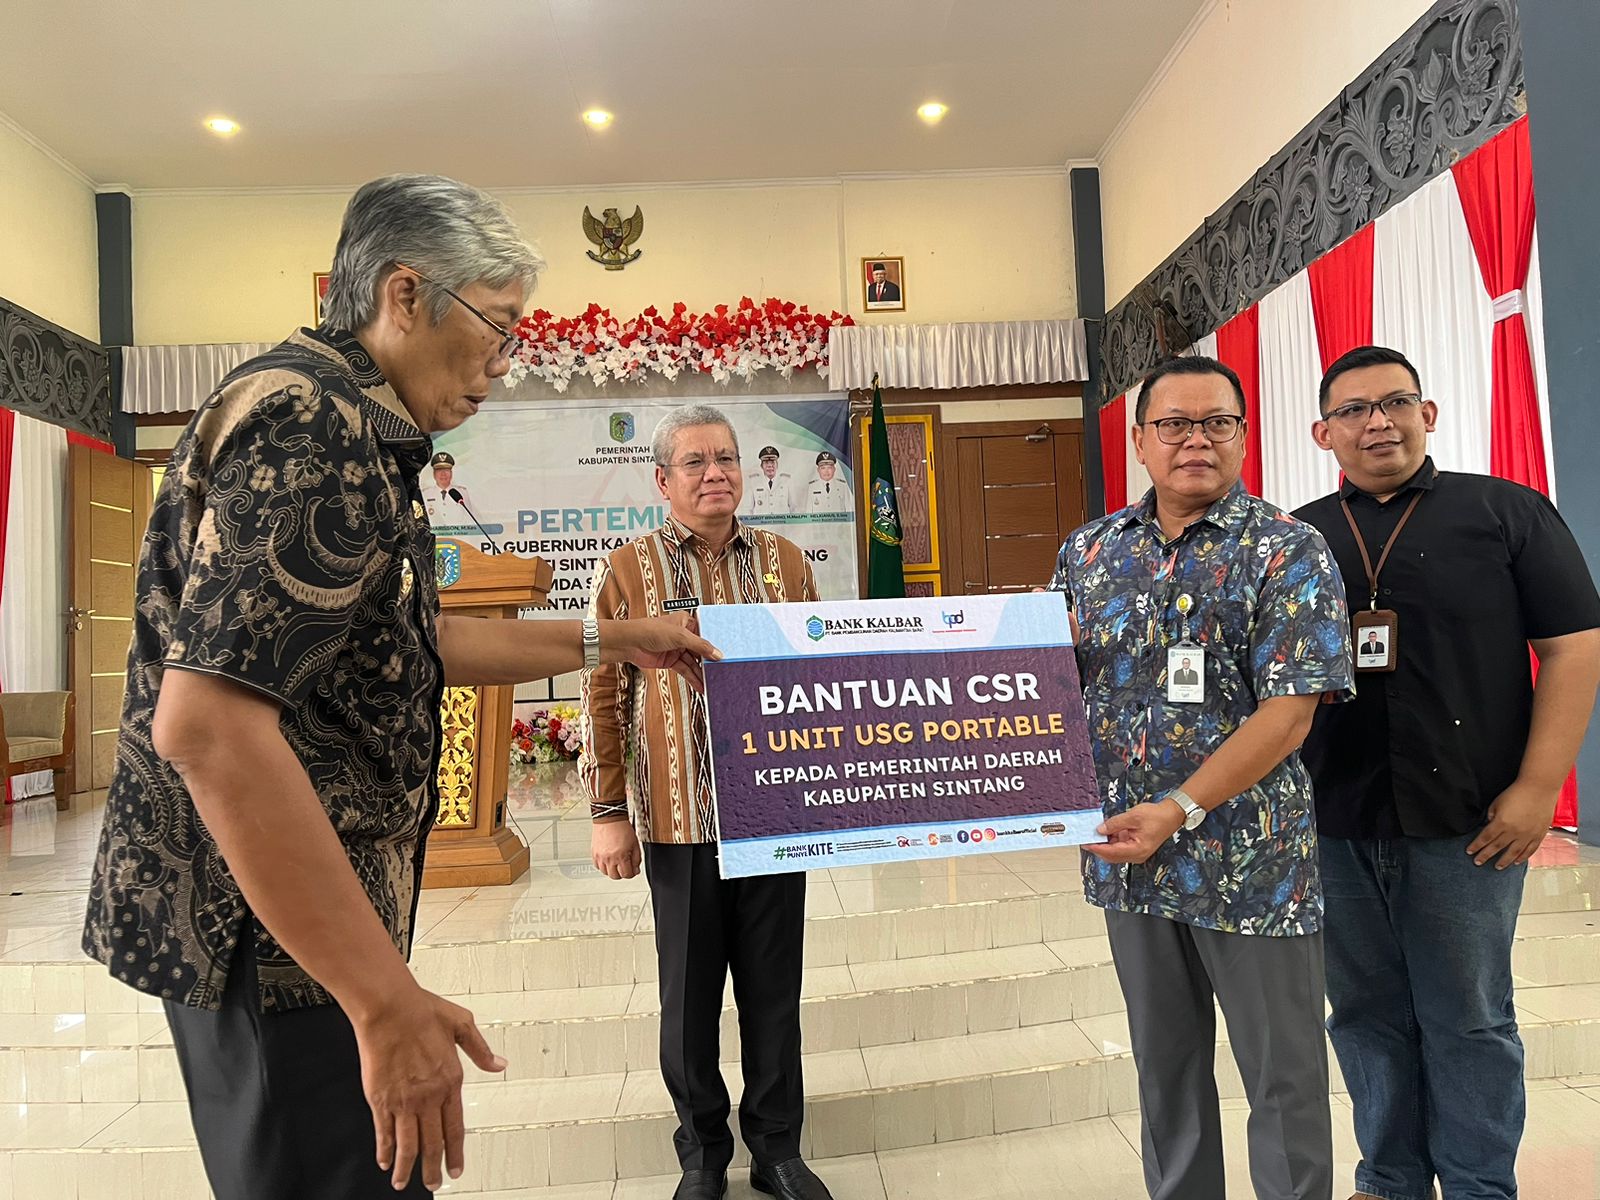 Dirut Bank Kalbar, Rokidi menyerahkan bantuan CSR secara simbolis kepada Bupati Sintang Jarot Winarno di Aula Pendopo Bupati Sintang. (Foto: Jauhari/KalbarOnline.com)